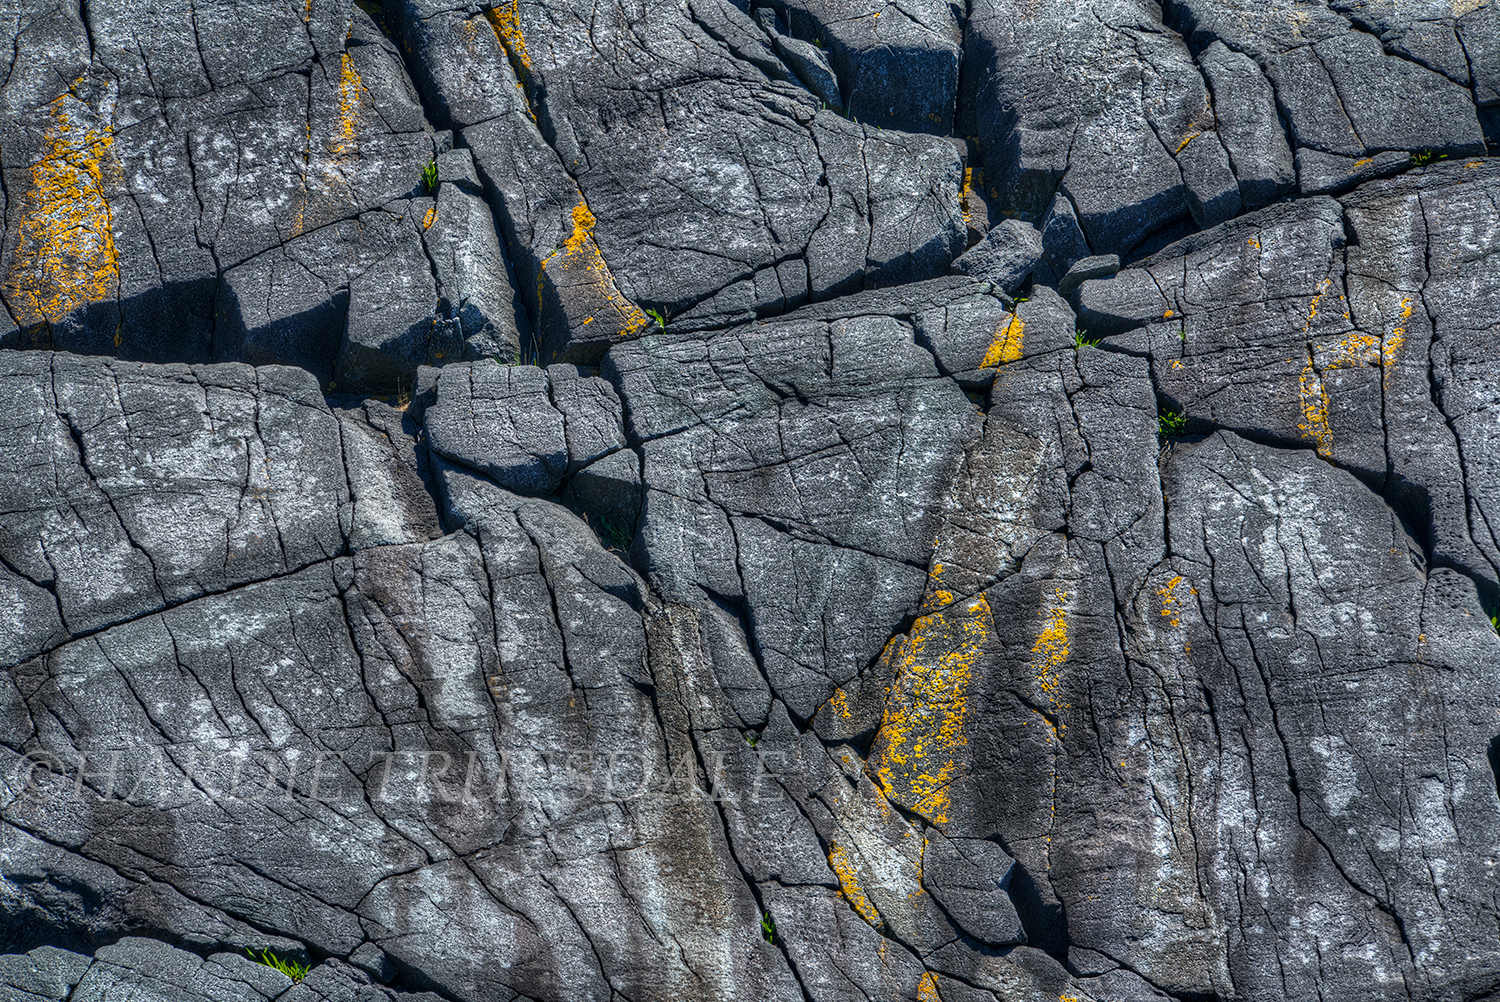 ME#71 "Rock and Lichen, Monhegan Island"